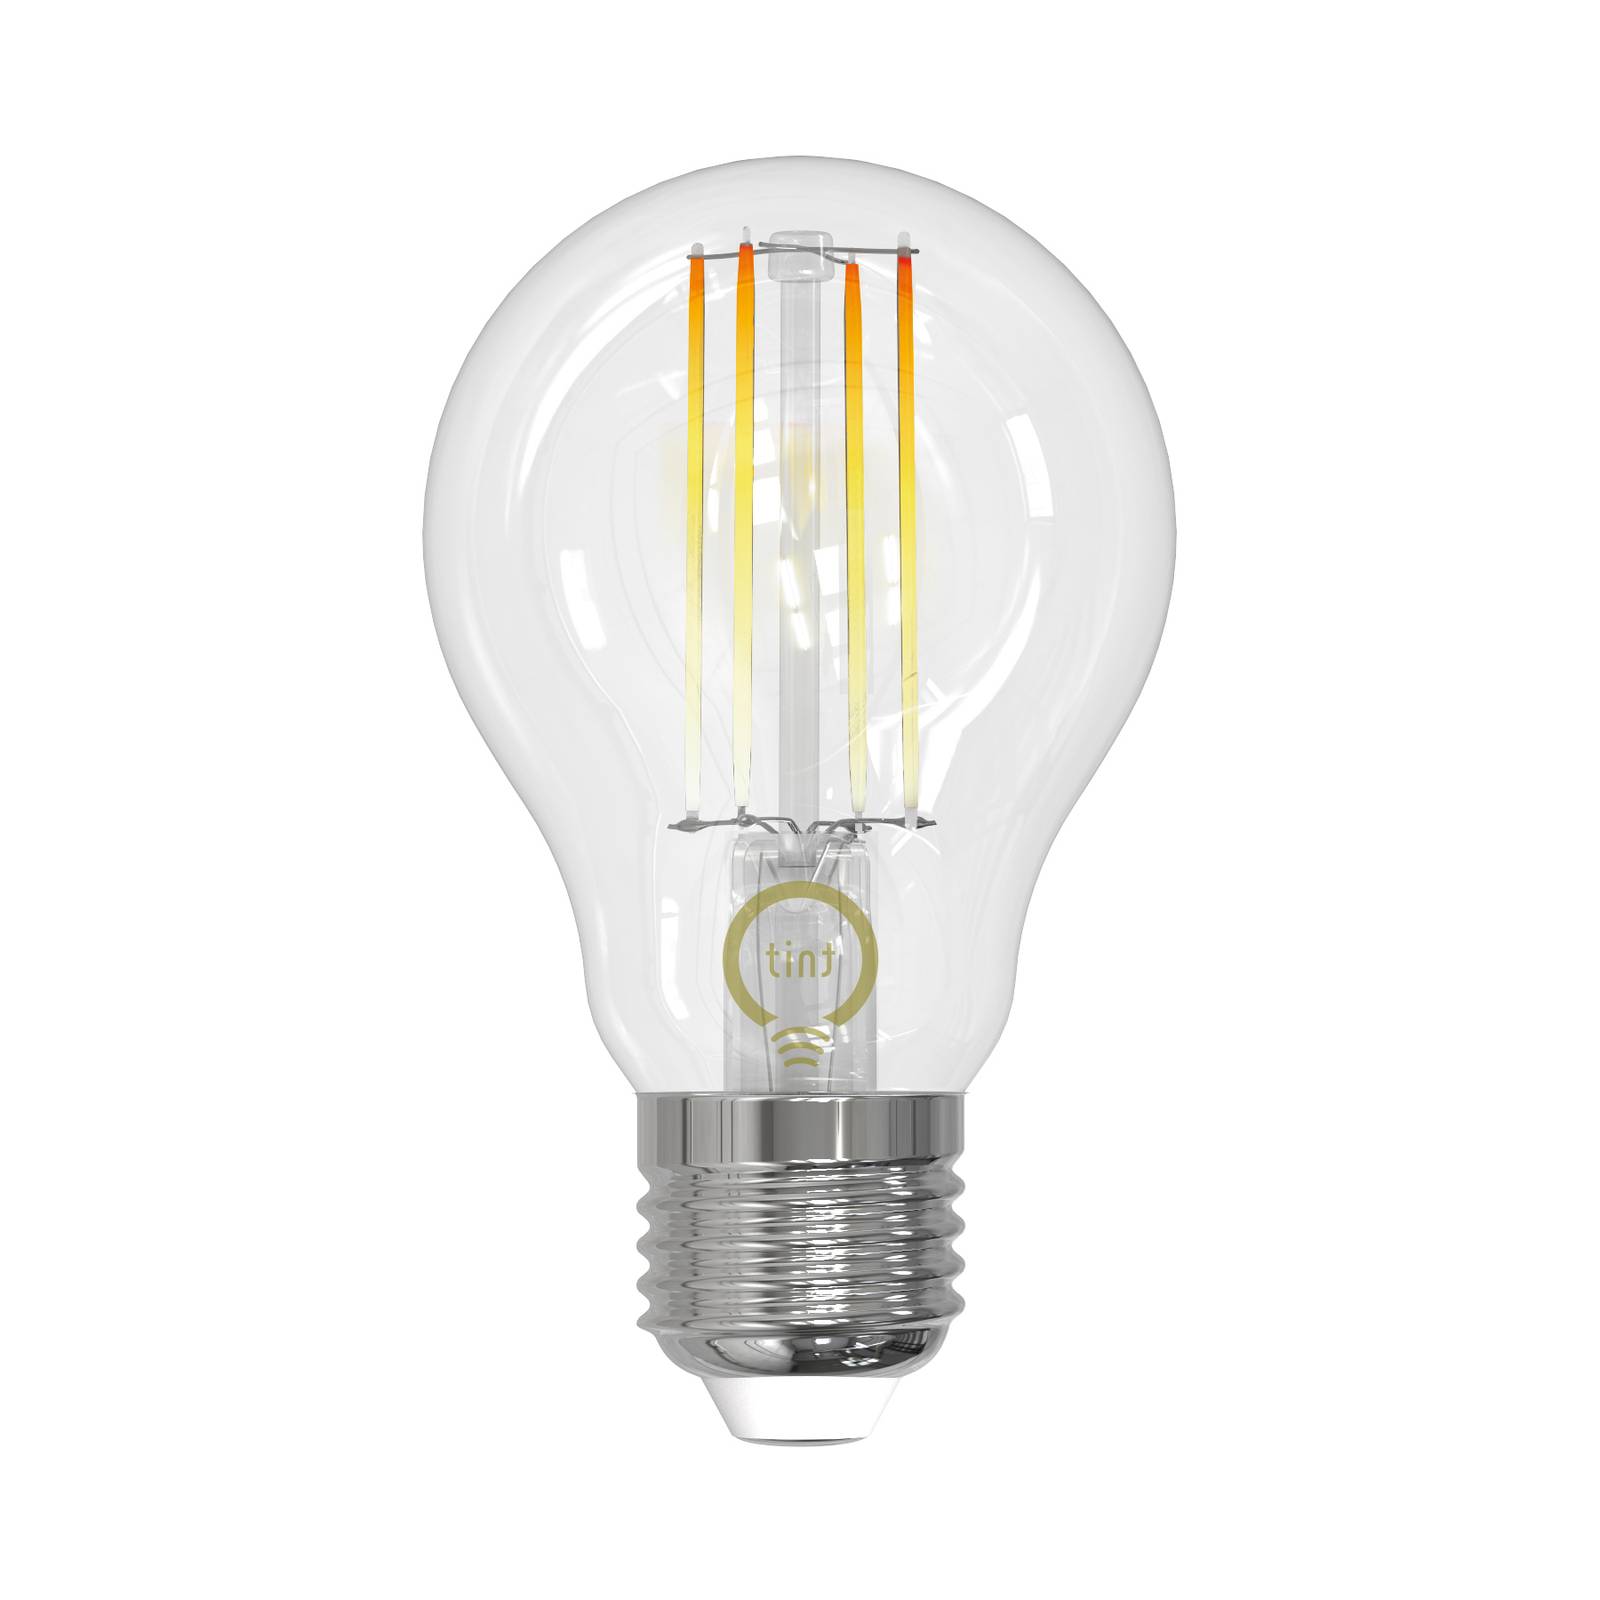 Müller Licht tint LED-Filamentlampe E27 7W CCT von tint